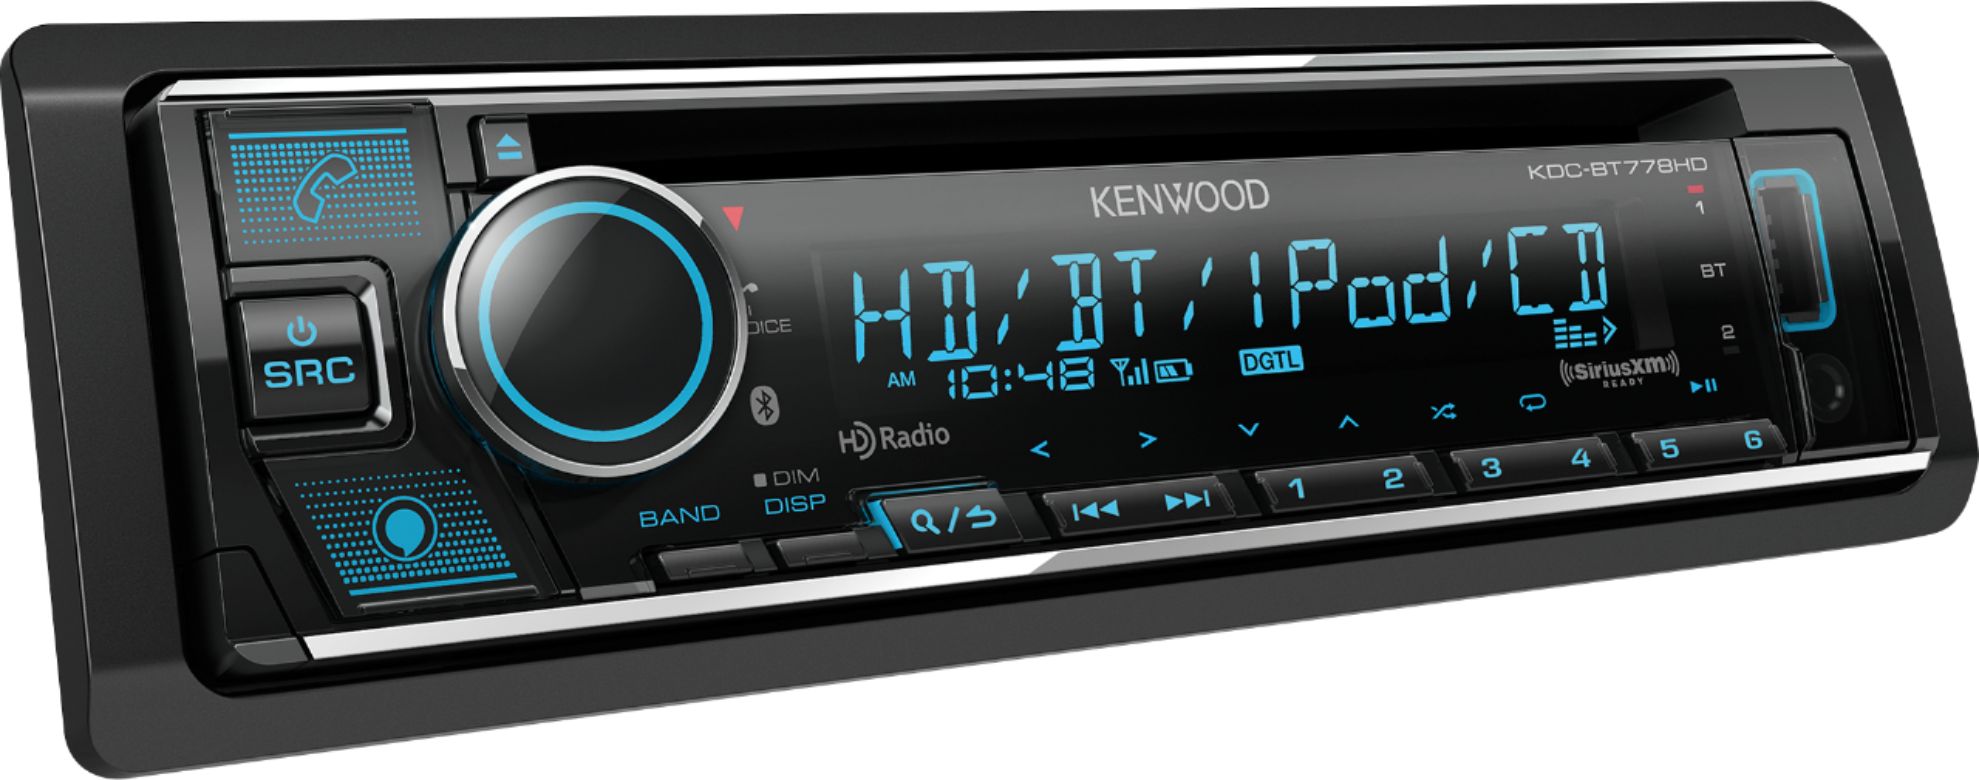 Best Buy: Kenwood In-Dash CD/DM Receiver Built-in Bluetooth 